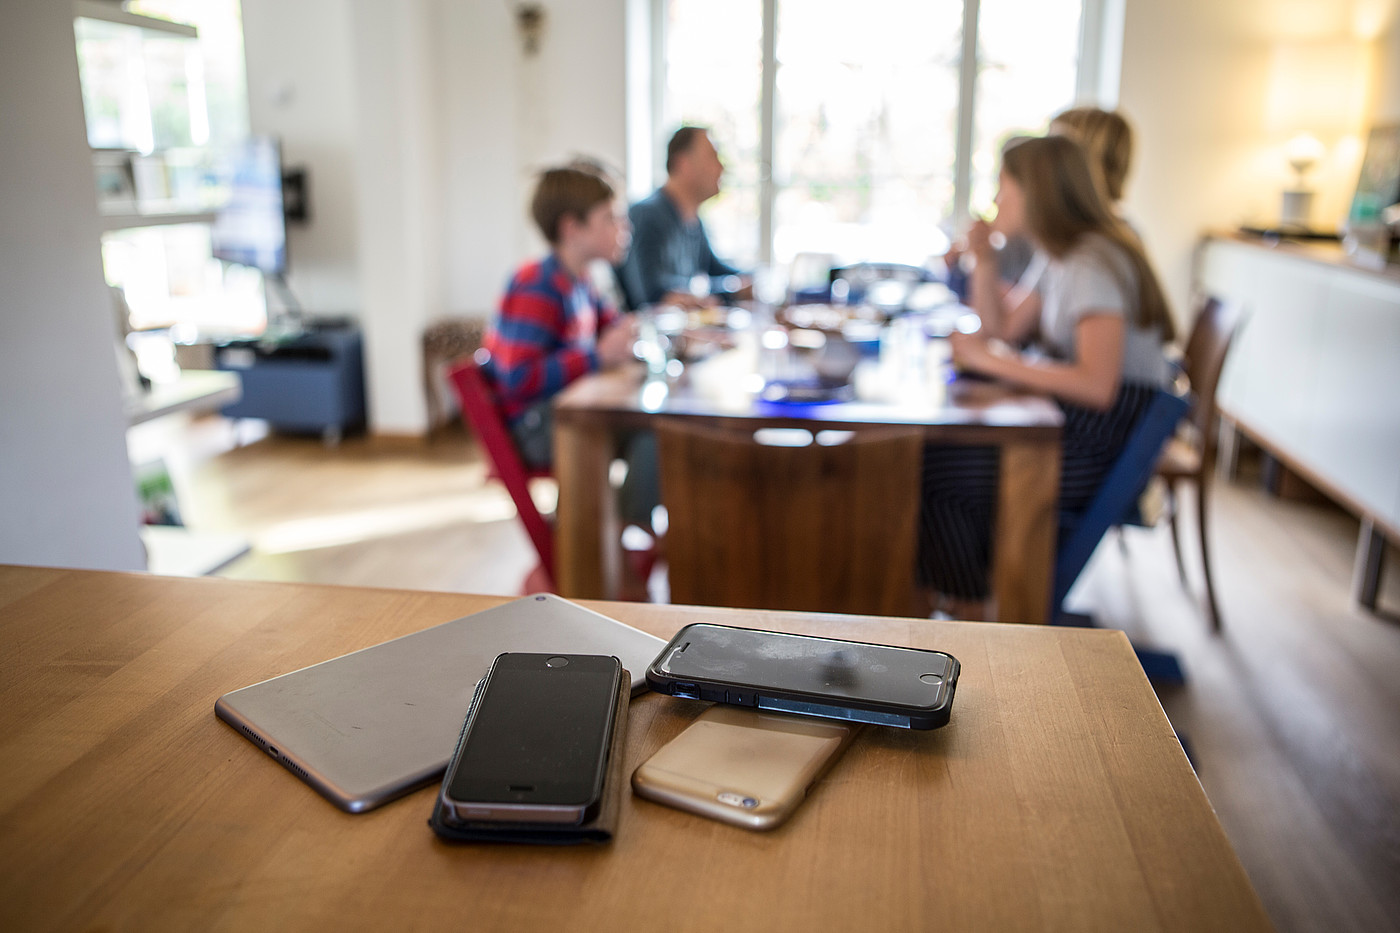 Die Smartphones liegen abseits vom Esstisch, während dem die Familie eine Mahlzeit einnimmt.